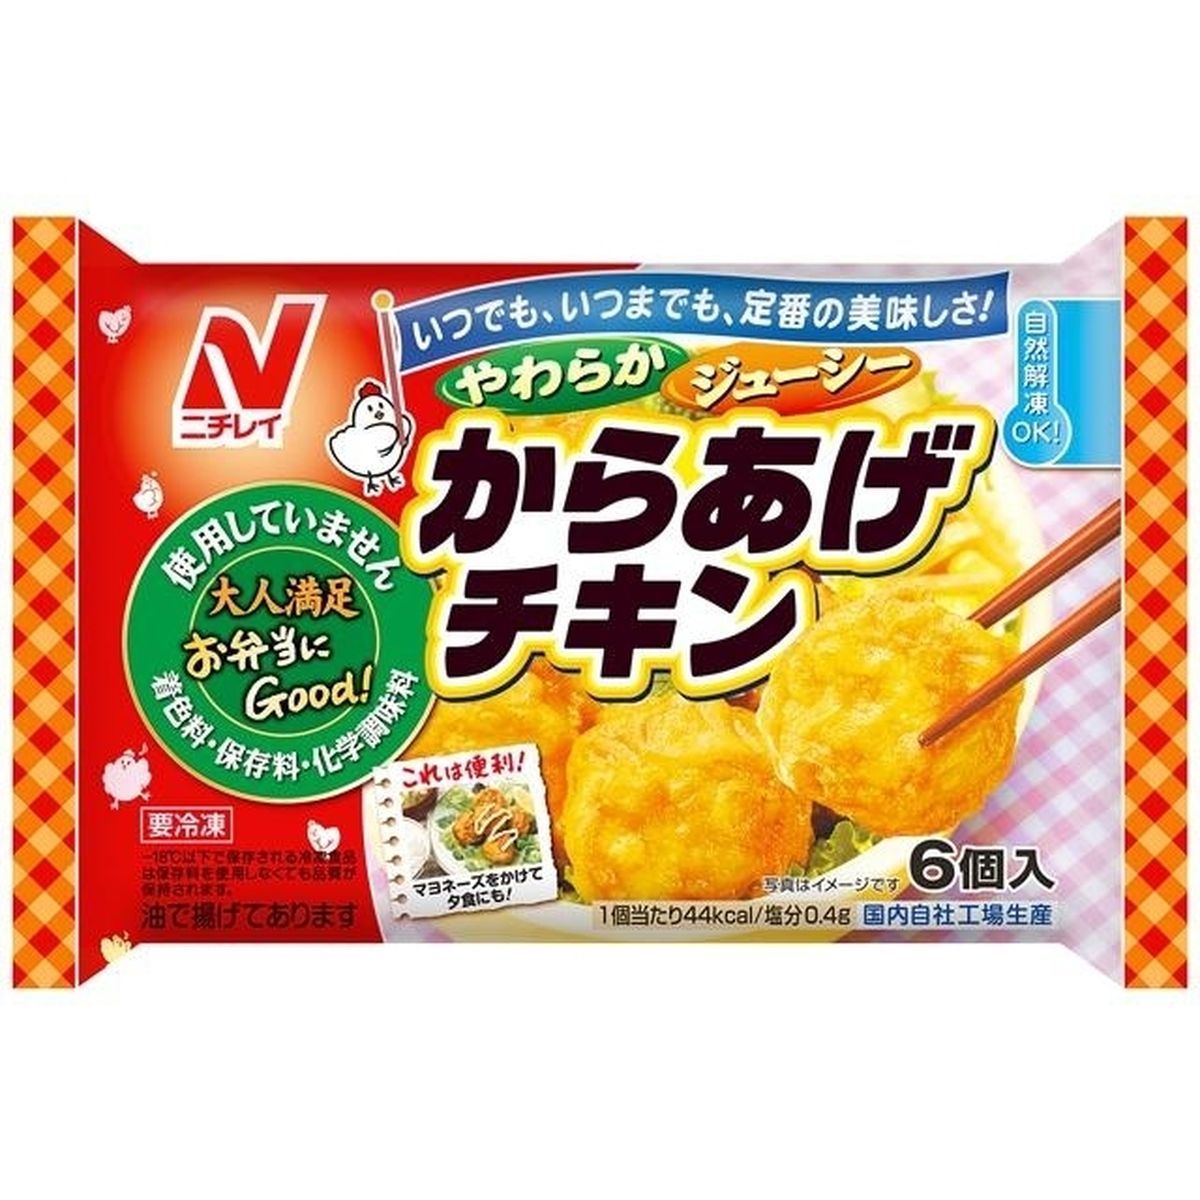 【冷凍】ニチレイ からあげチキン 6個×12